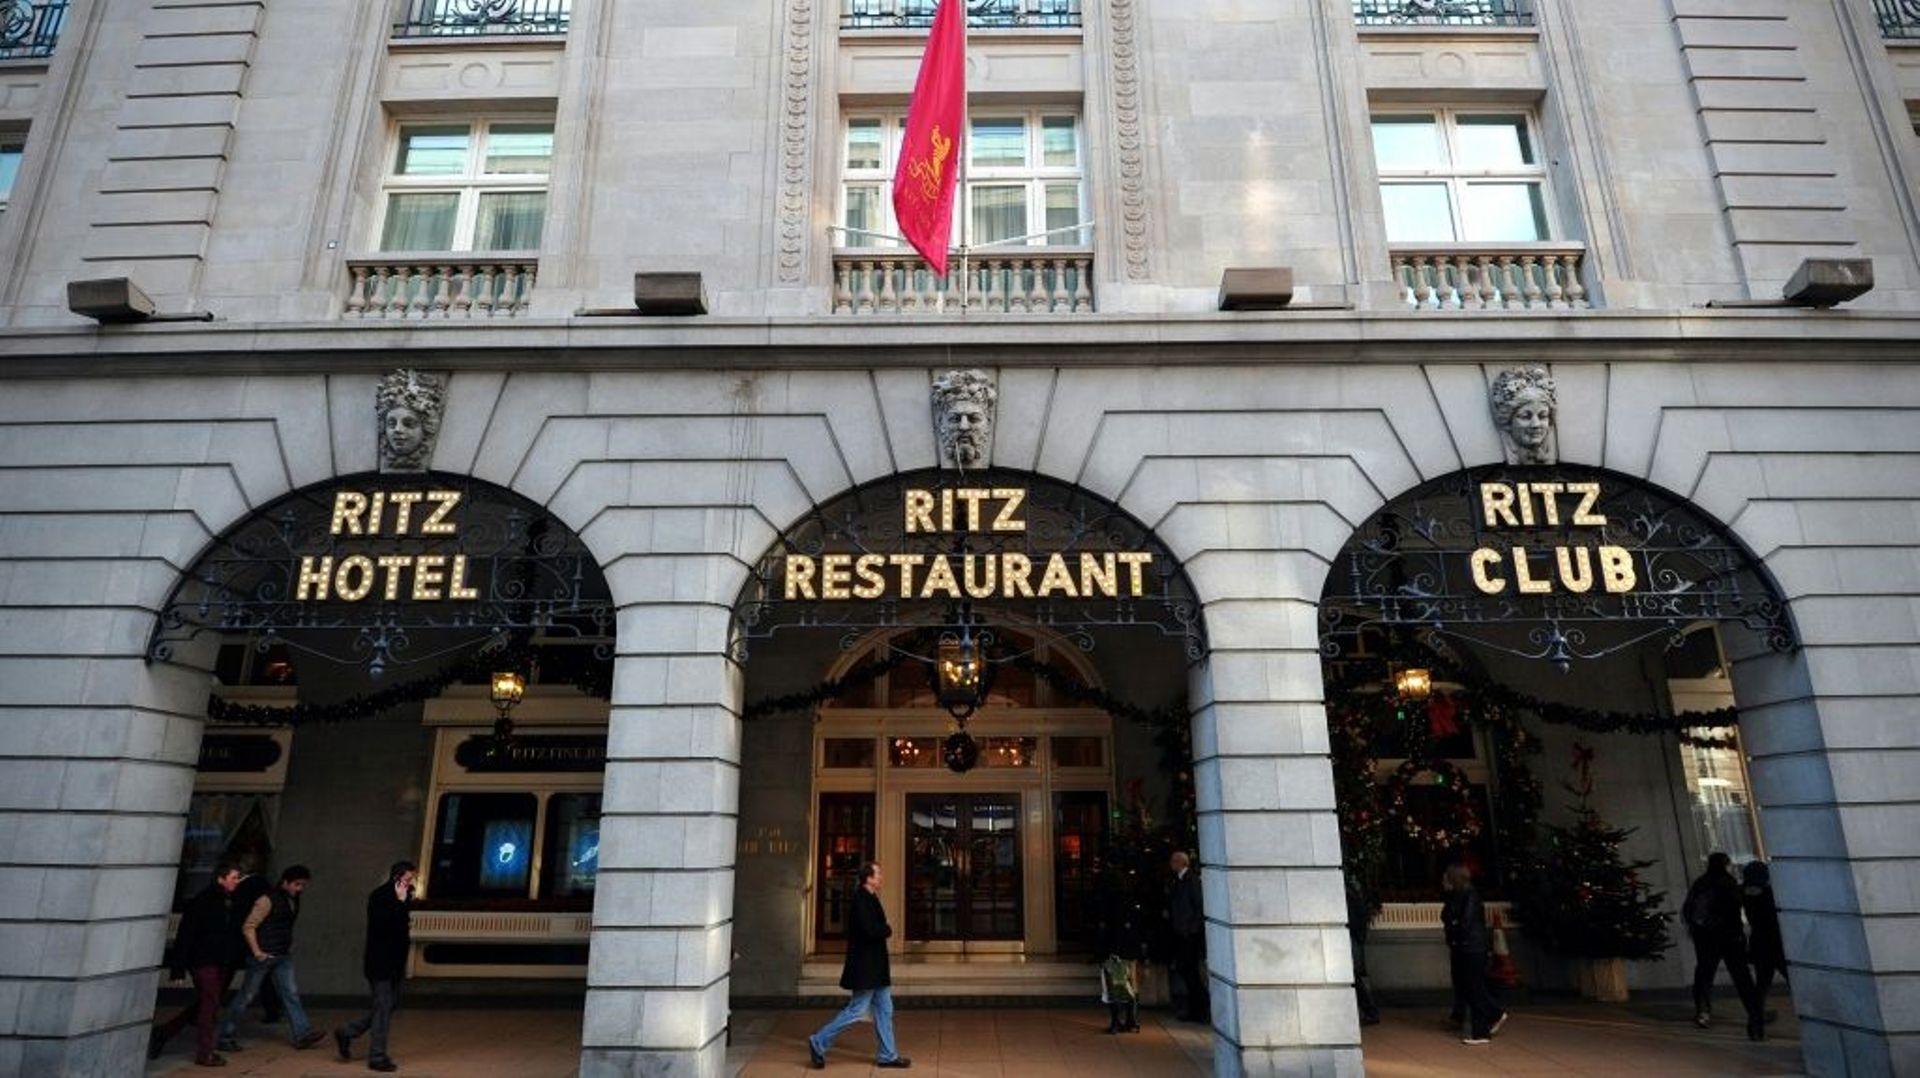 Les milliardaires britanniques propriétaires du Ritz de Londres, qui cherchent à vendre une partie de leurs biens, ont affirmé mercredi avoir reçu des propositions dépassant le milliard de livres